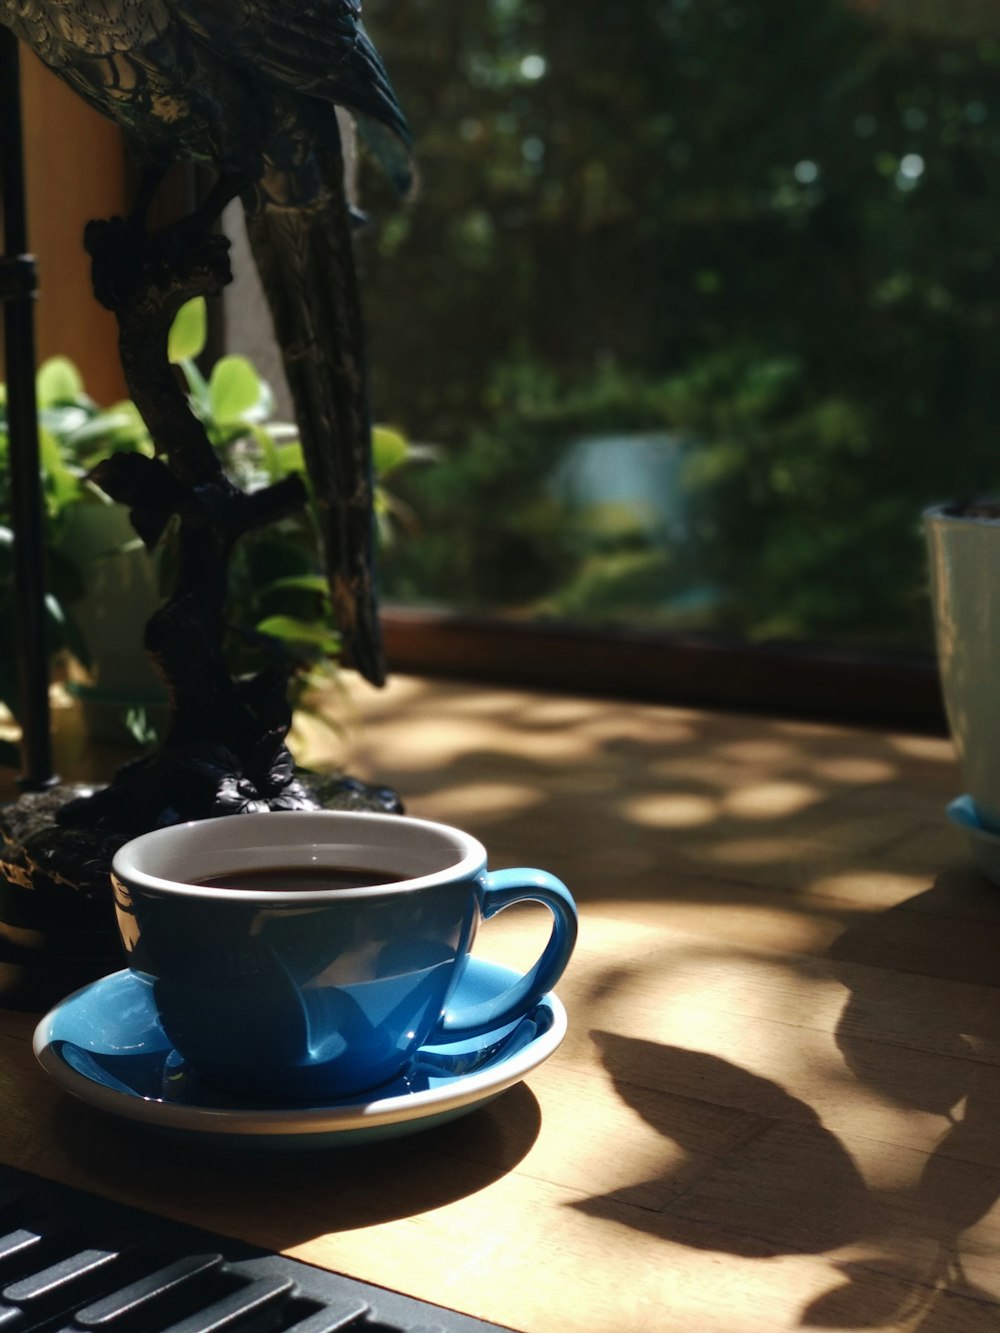 xícara de chá de cerâmica azul no pires